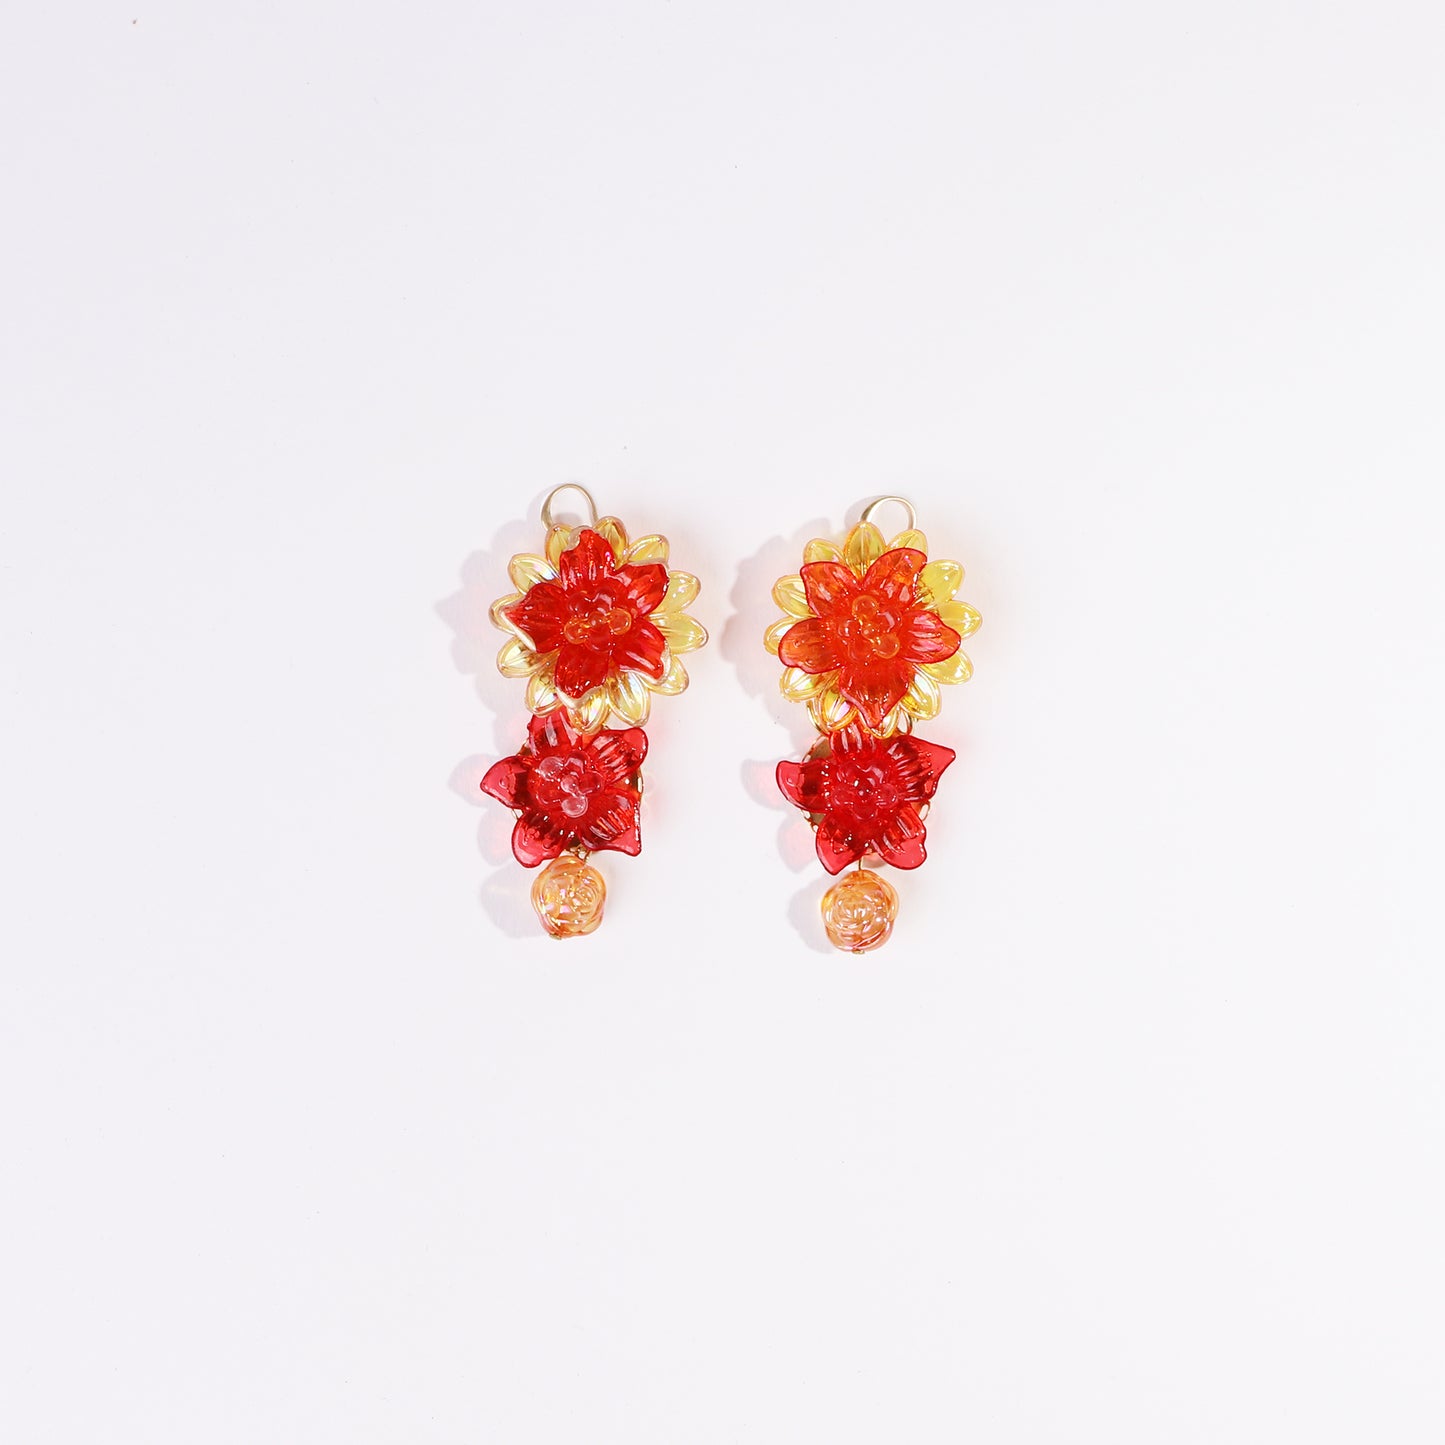 orange and scarlet flower earrings